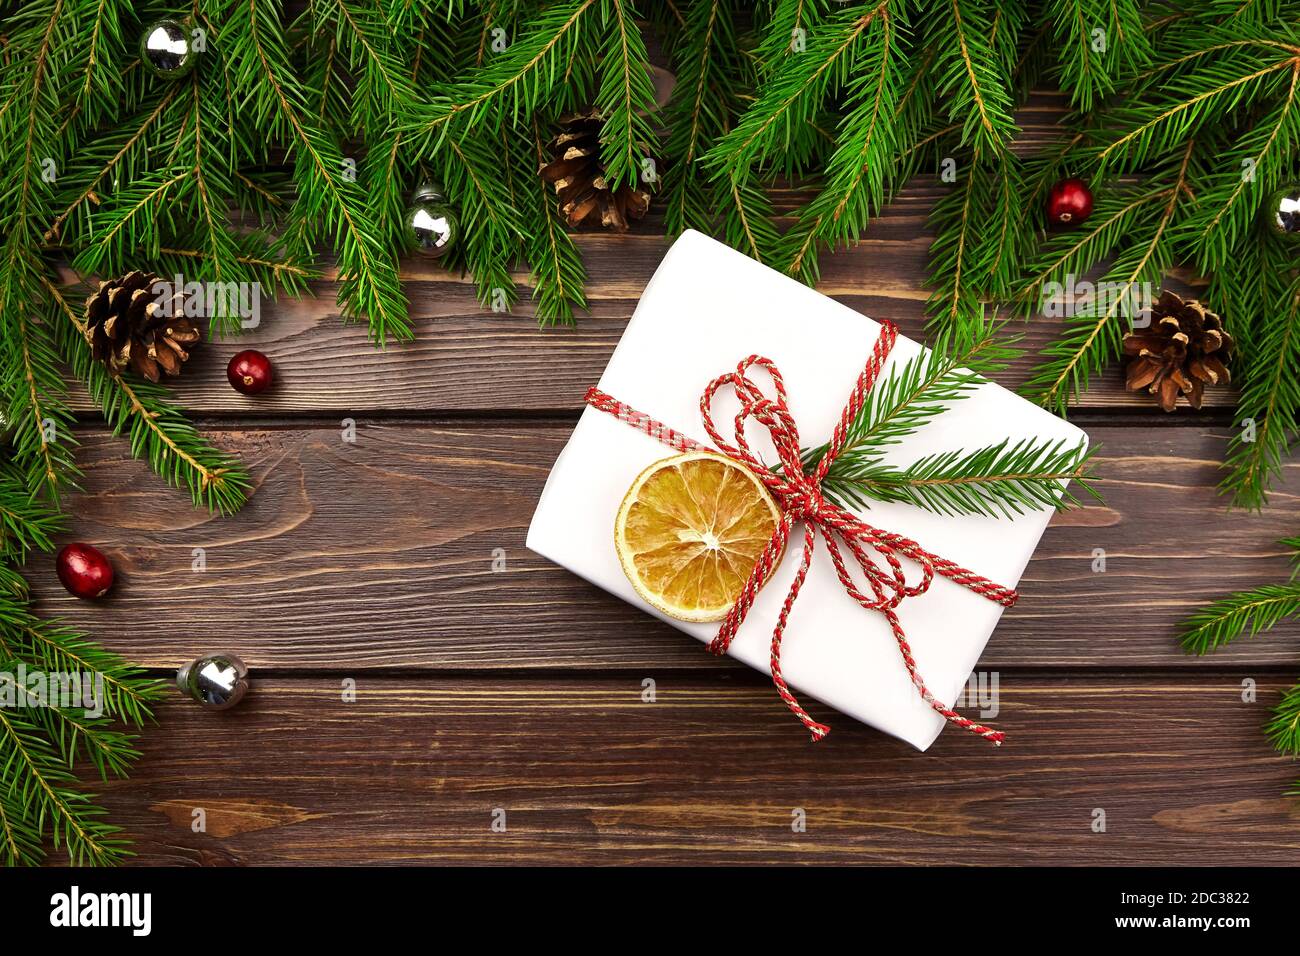 Schmückt weihnachts-Geschenkbox mit Tannenzweigen, Zapfen und roten Beeren auf Holztisch, Draufsicht. Weihnachtskomposition. Stockfoto